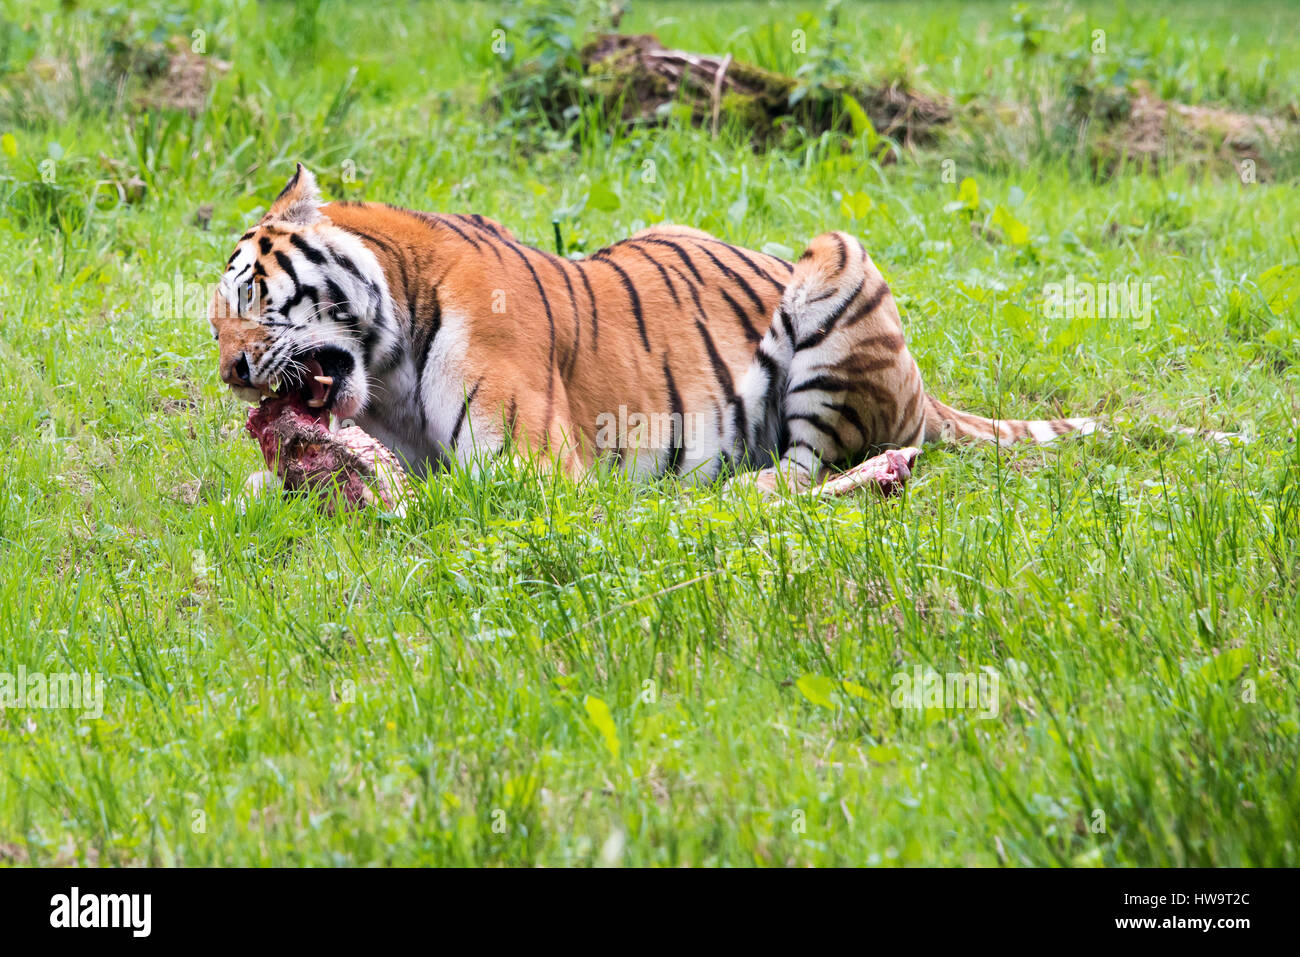 Horizontal close up of a Bengal Tiger. Stock Photo